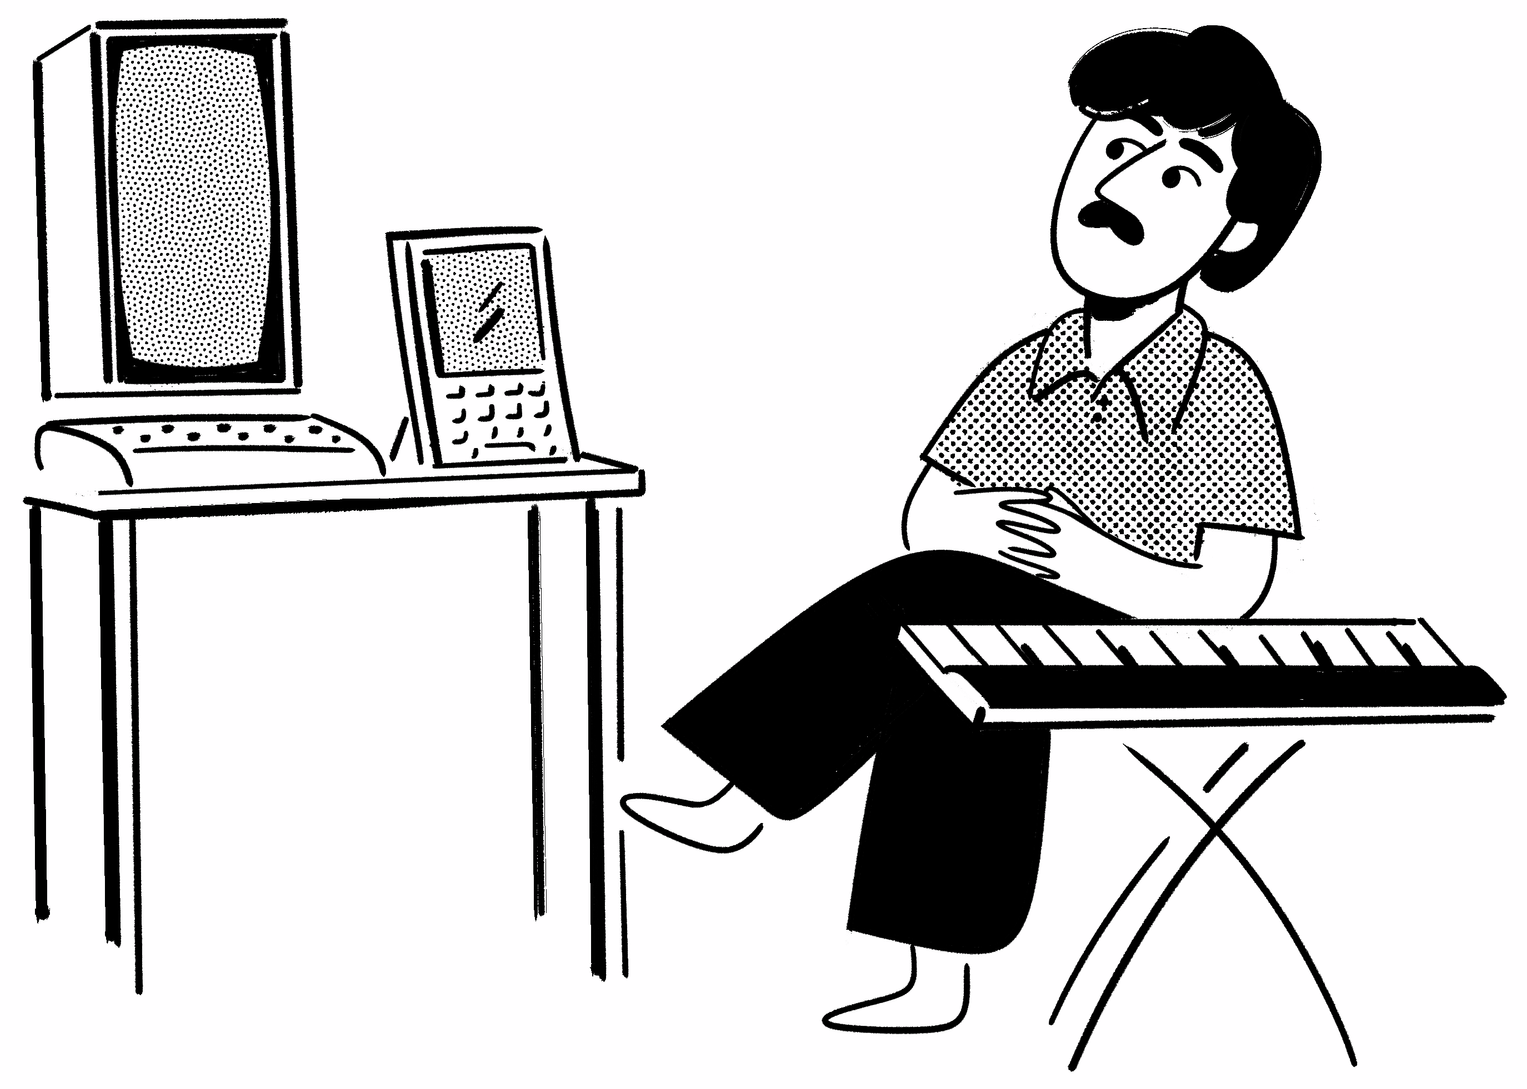 Alan Kay at his computer